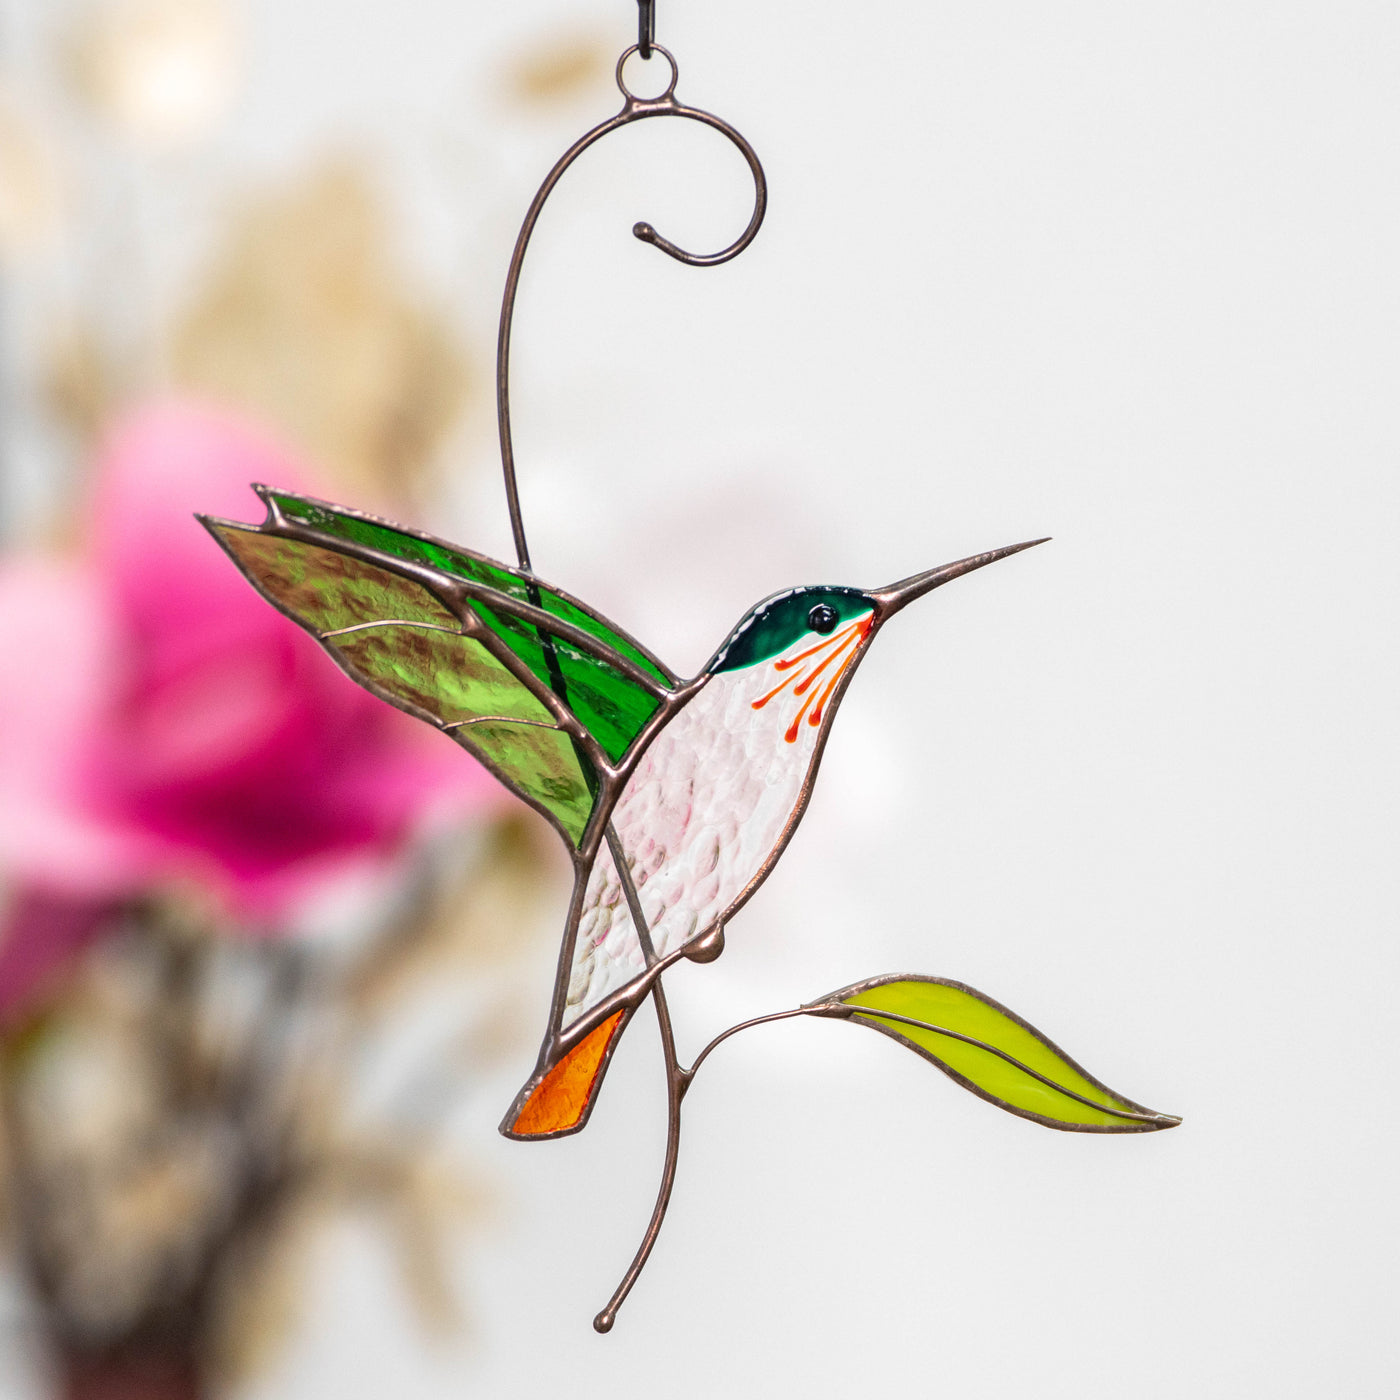 Suncatcher stained glass "Flying Golden Hummingbird"